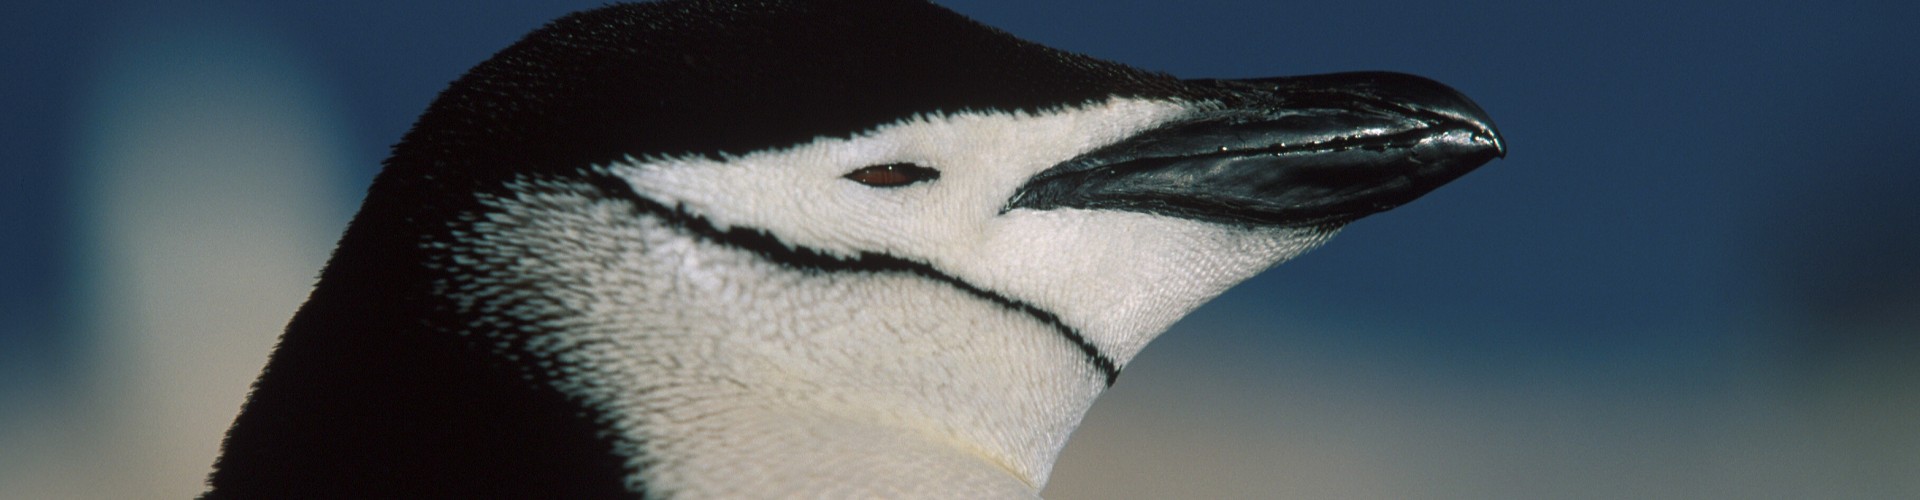 AN - Gen - Oceanwide - Chinstrap penguin by Franco Banfi